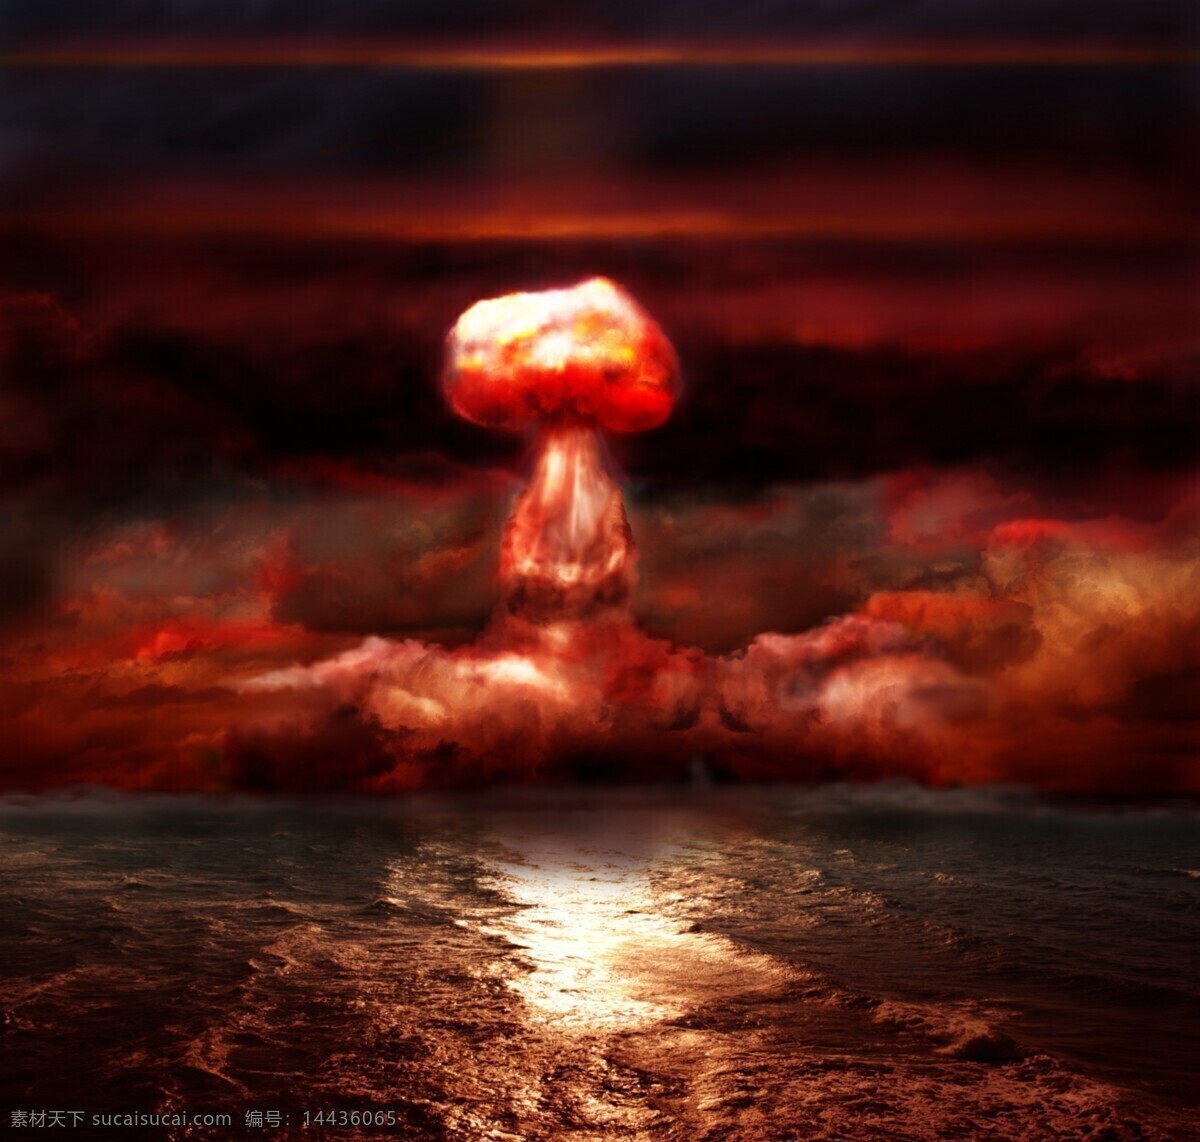 核武器 爆炸 核武器爆炸 原子弹爆炸 爆炸蘑菇云 炸弹 火焰 军事武器 现代科技